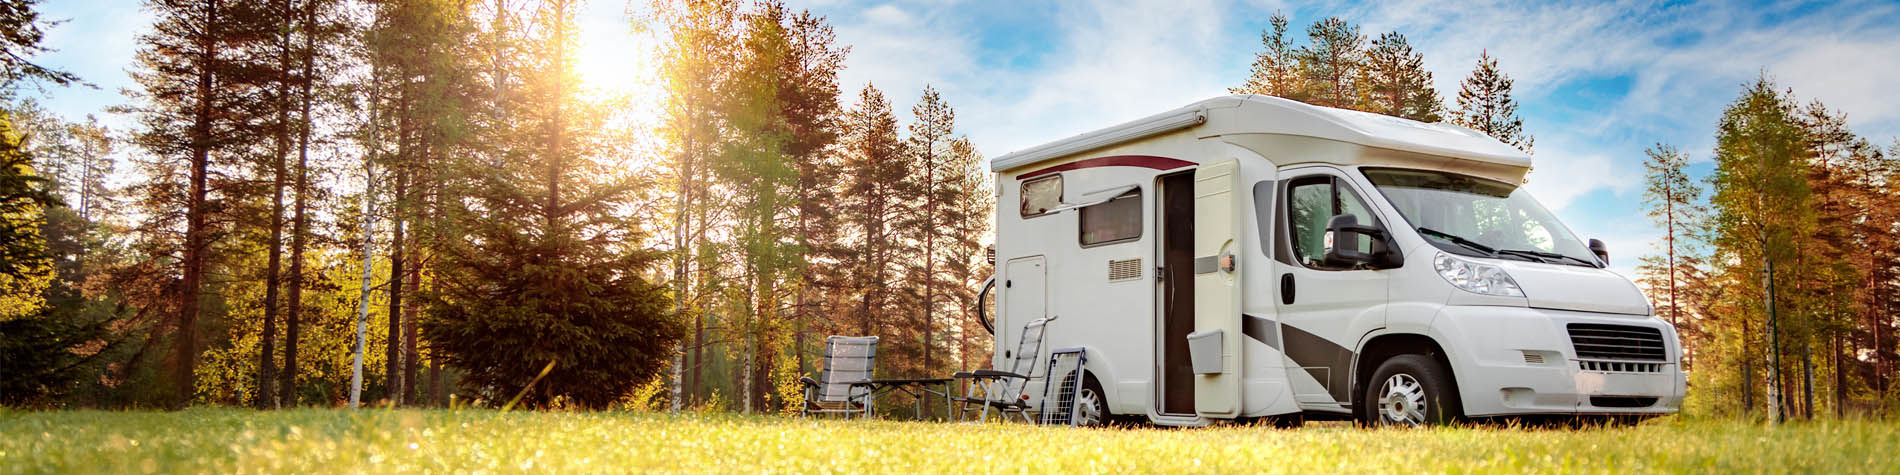 Offrir un voyage : le camping-car, solution idéale aujourd'hui